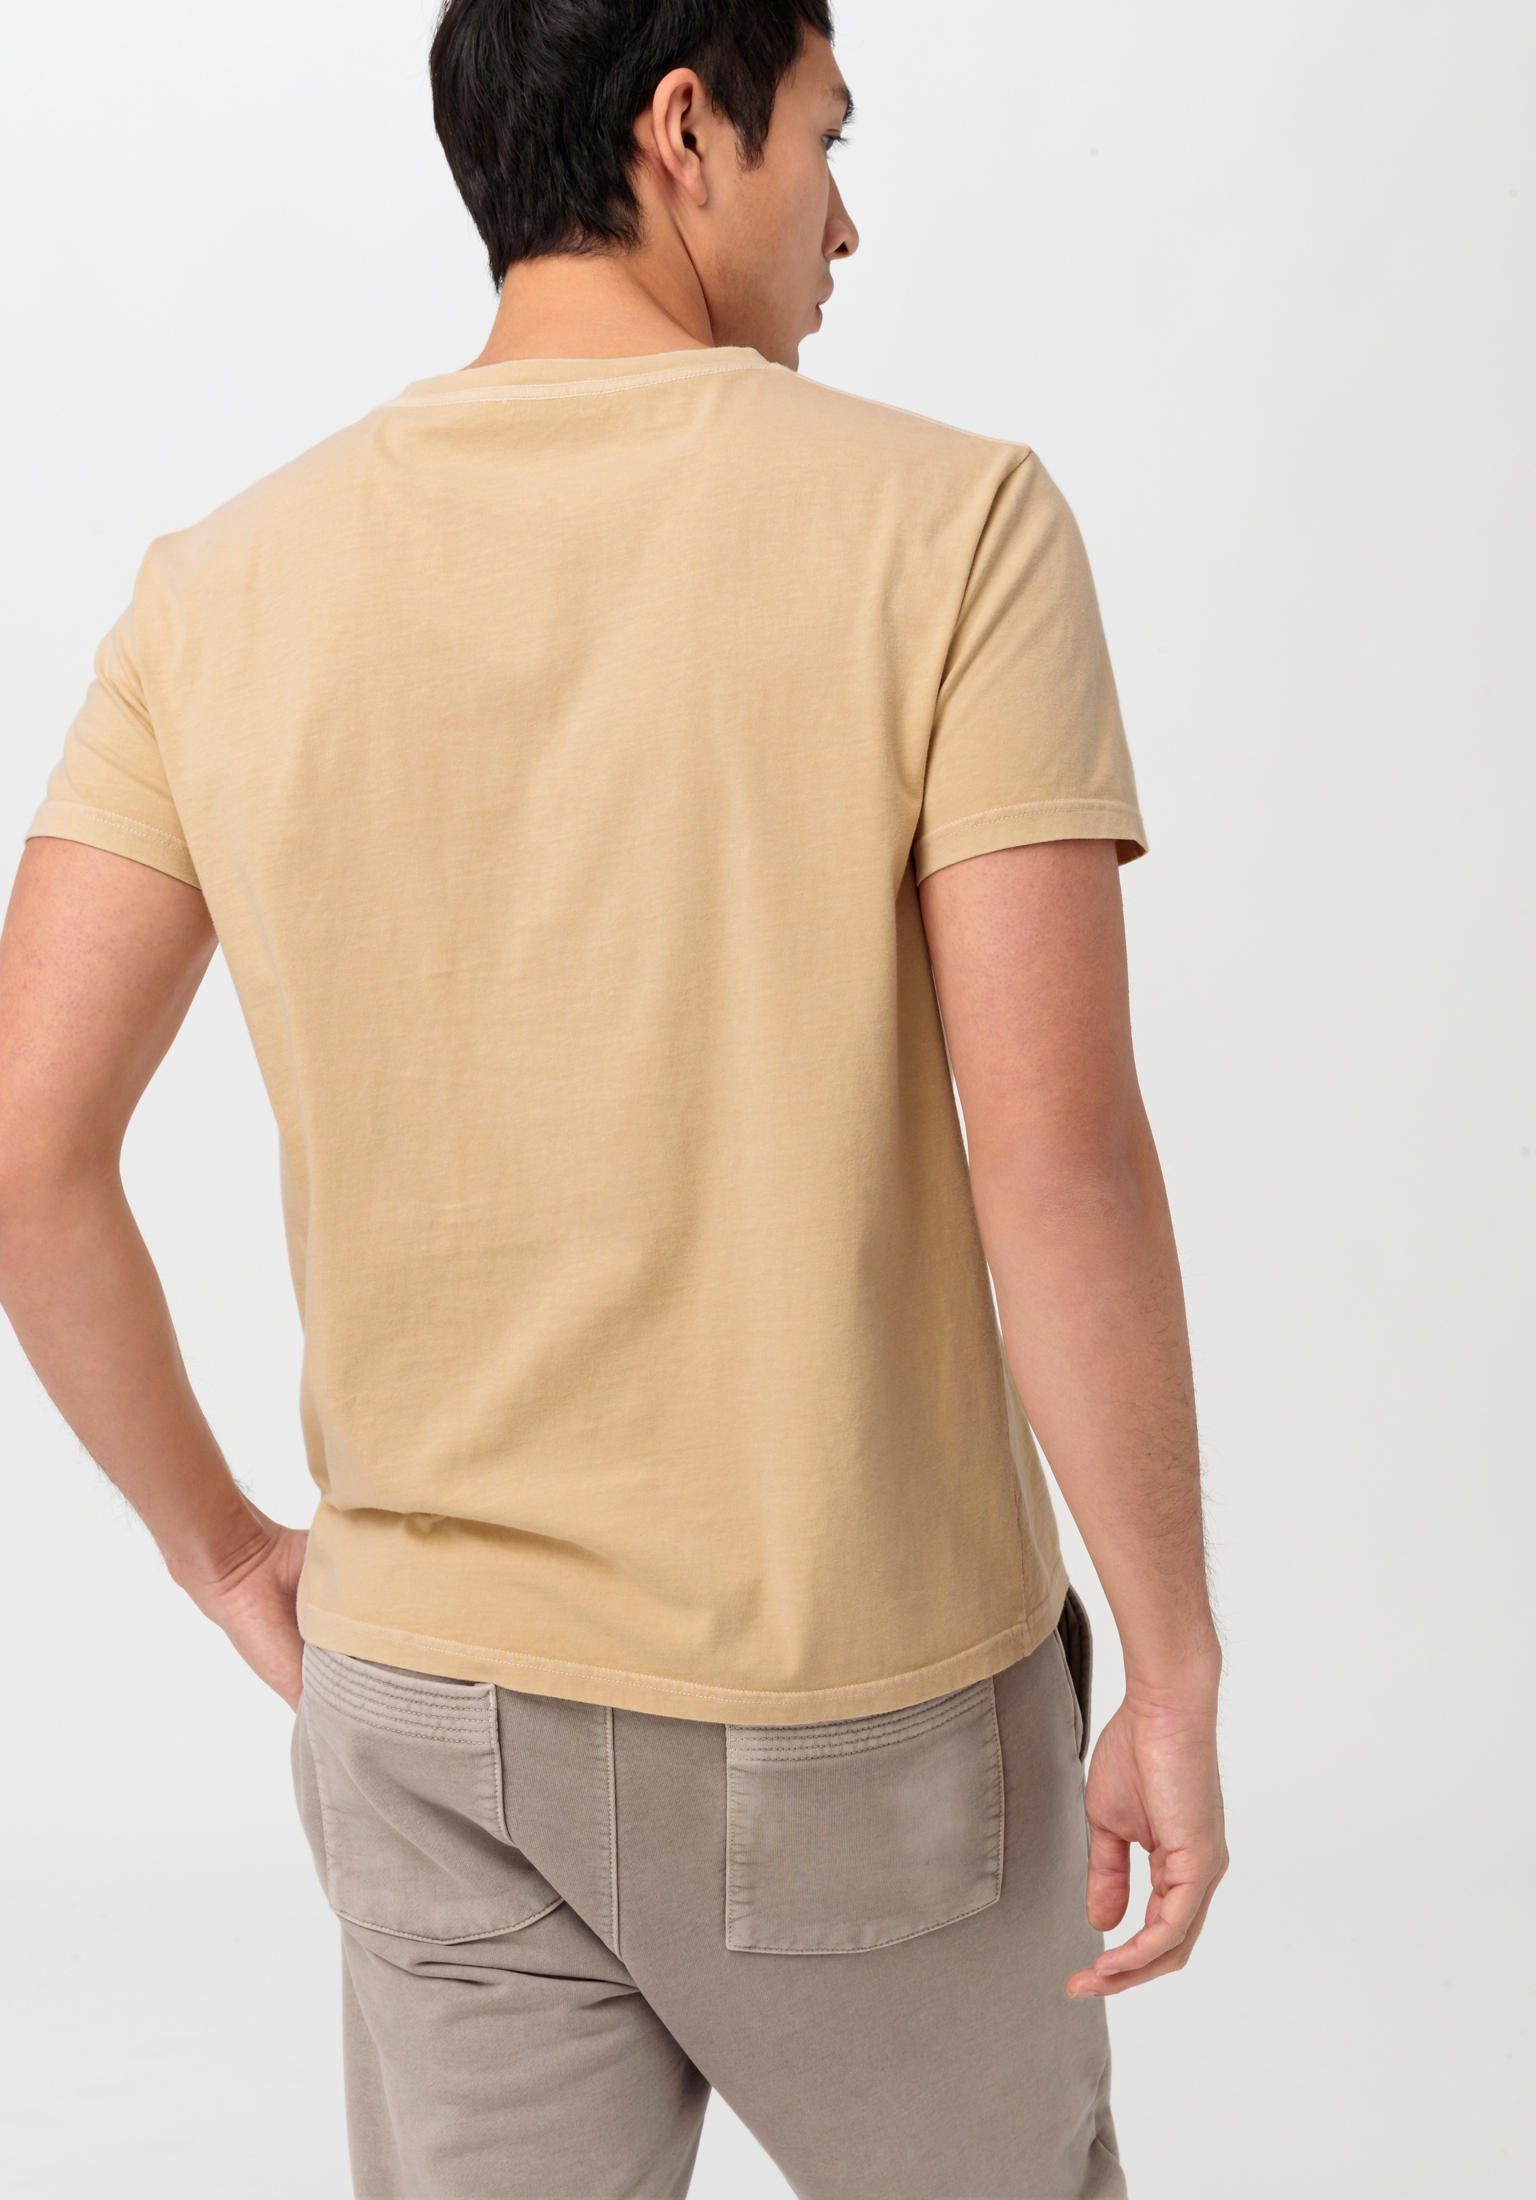 mineralgefärbt sand Bio-Baumwolle aus reiner T-Shirt Hessnatur